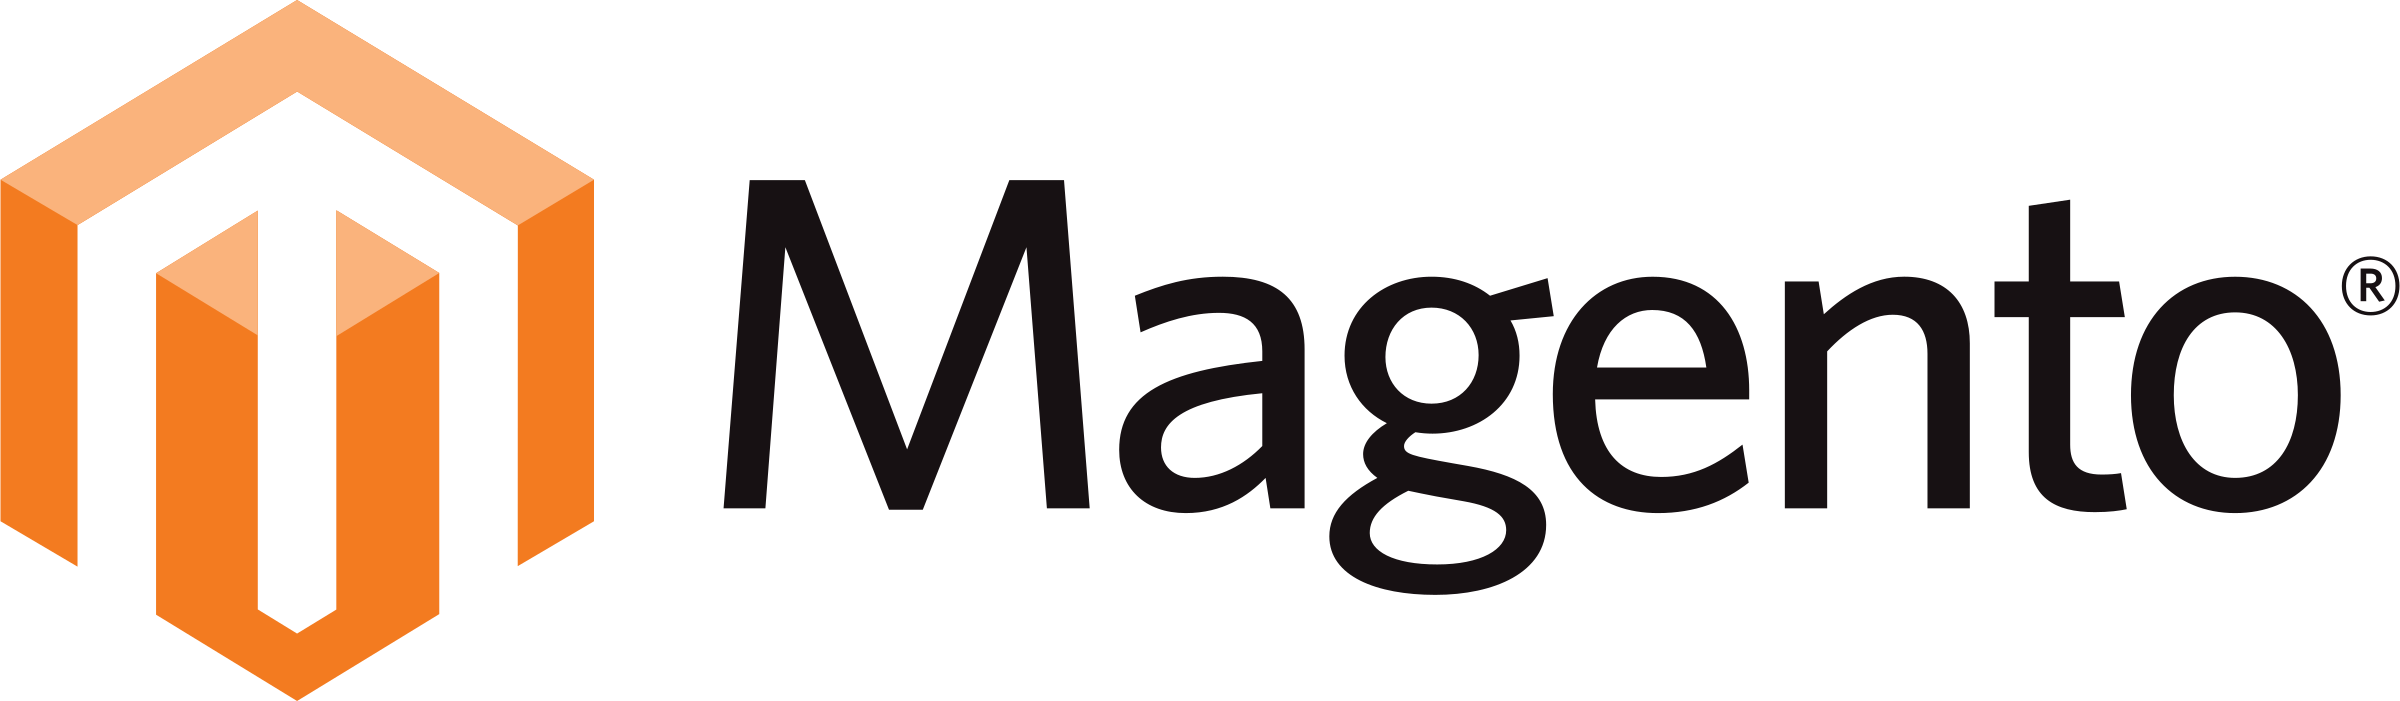 magento-1-logo-png-transparent (1).png